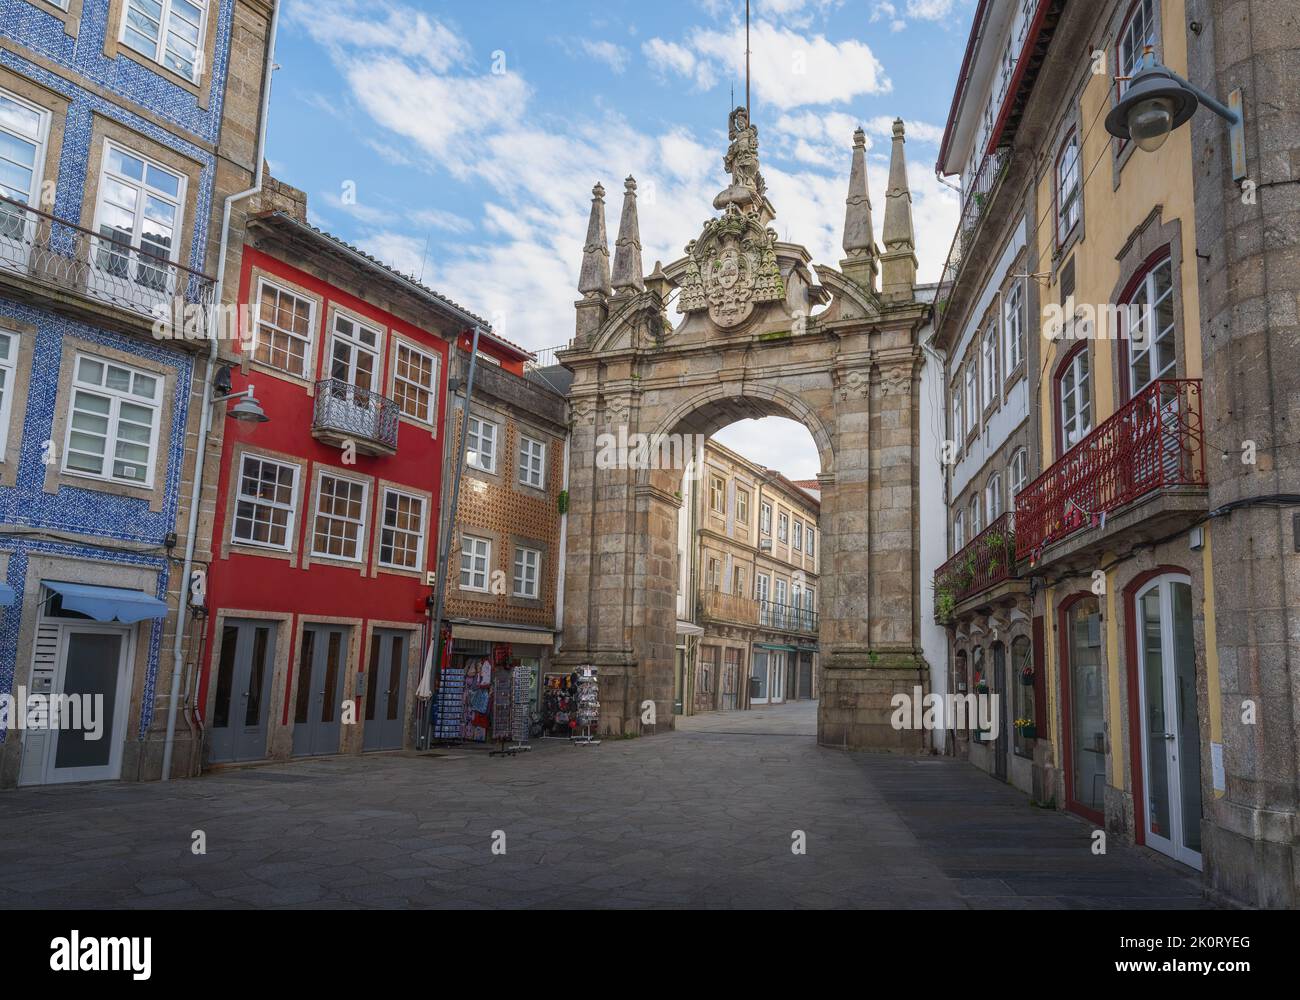 Arch of the New Gate (Arco da Porta Nova) - Braga, Portugal Stock Photo